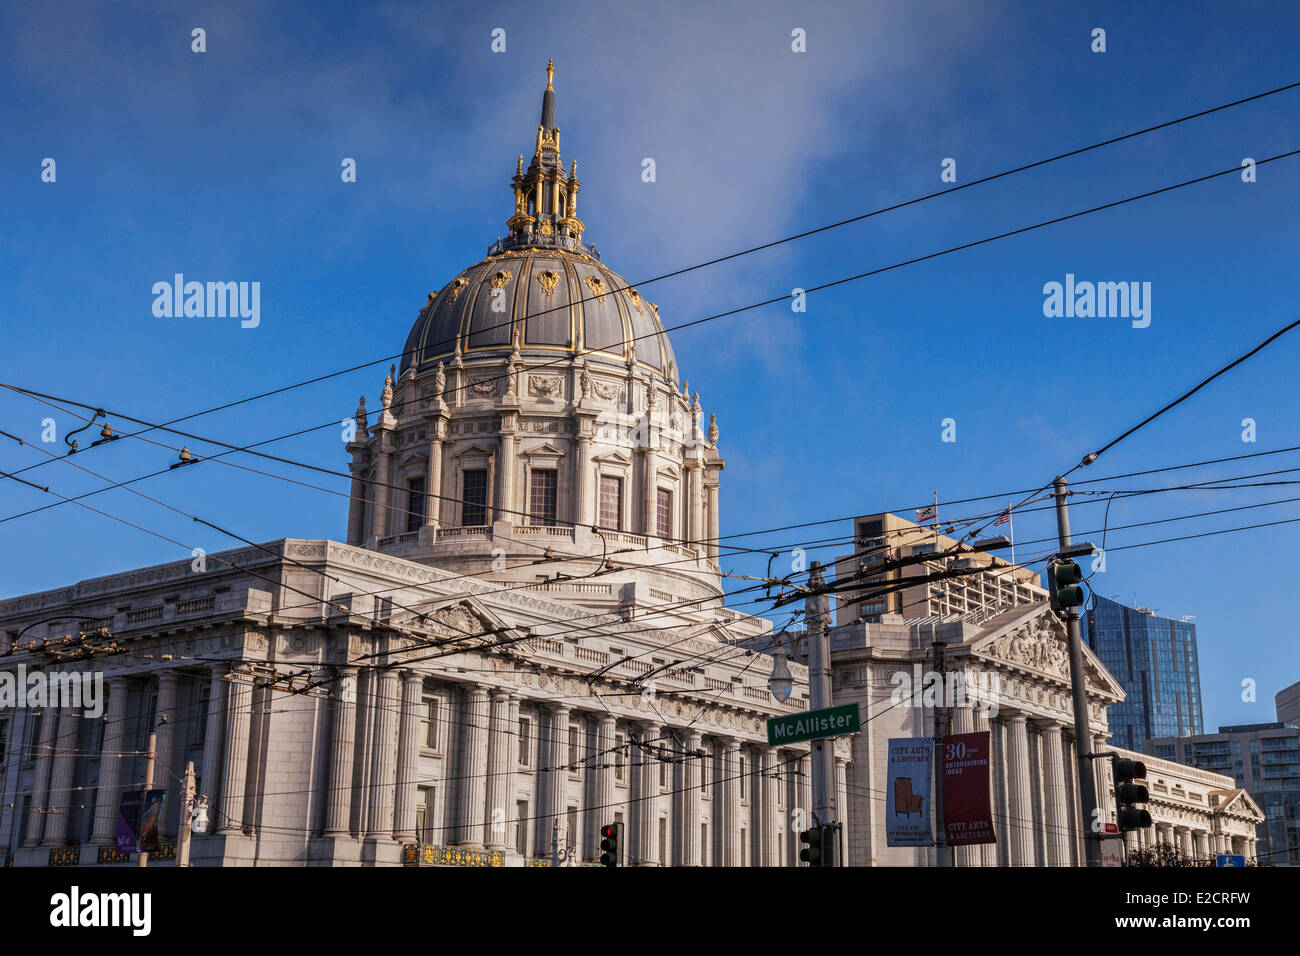 L'Hôtel de ville de San Francisco, et les lignes électriques pour les trolleybus. Banque D'Images